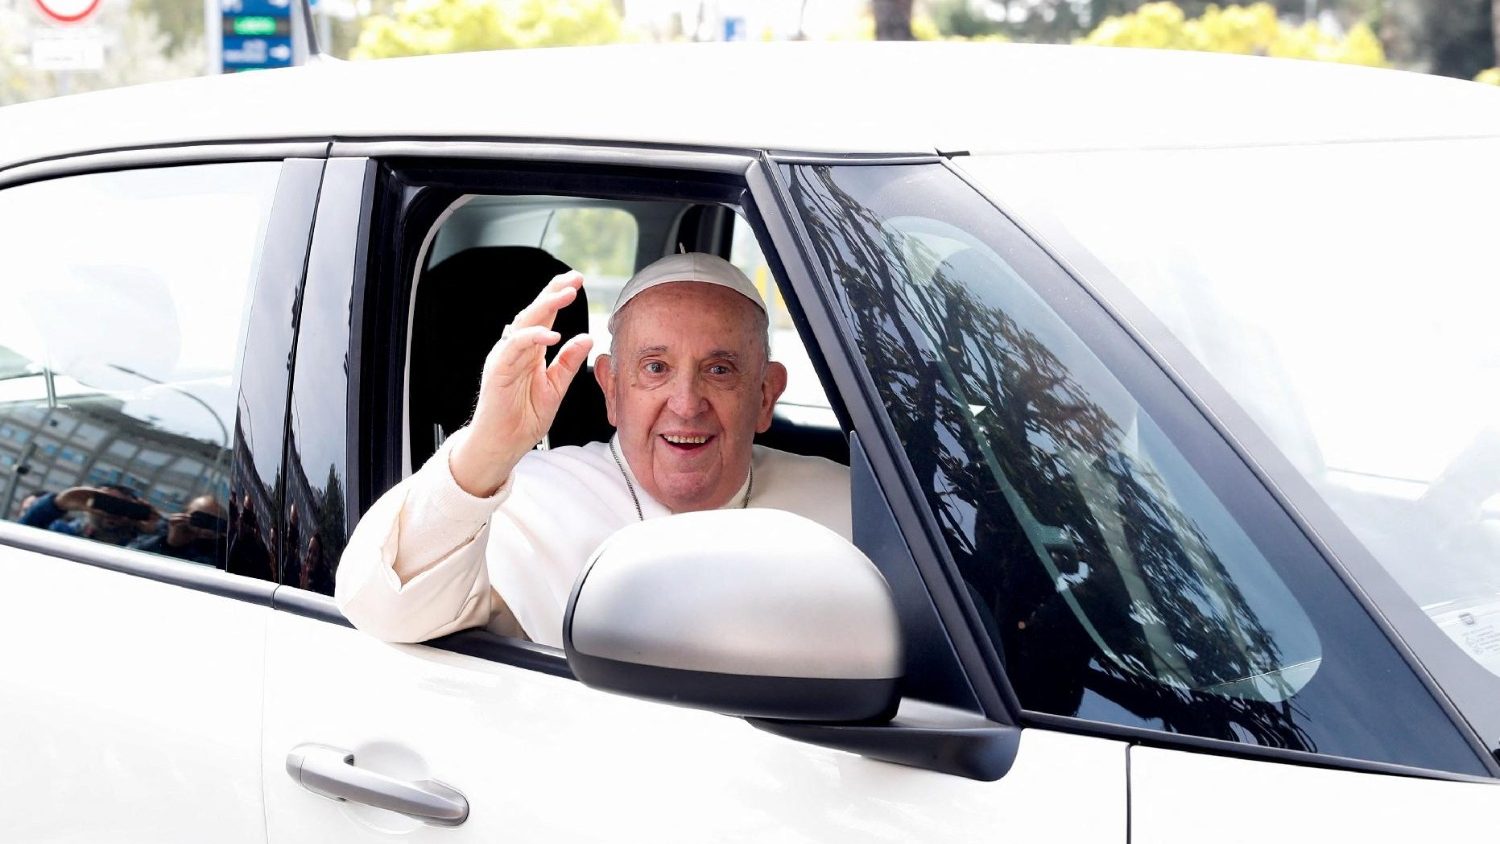 Paus Francis kembali ke rumah setelah tinggal sebentar di rumah sakit